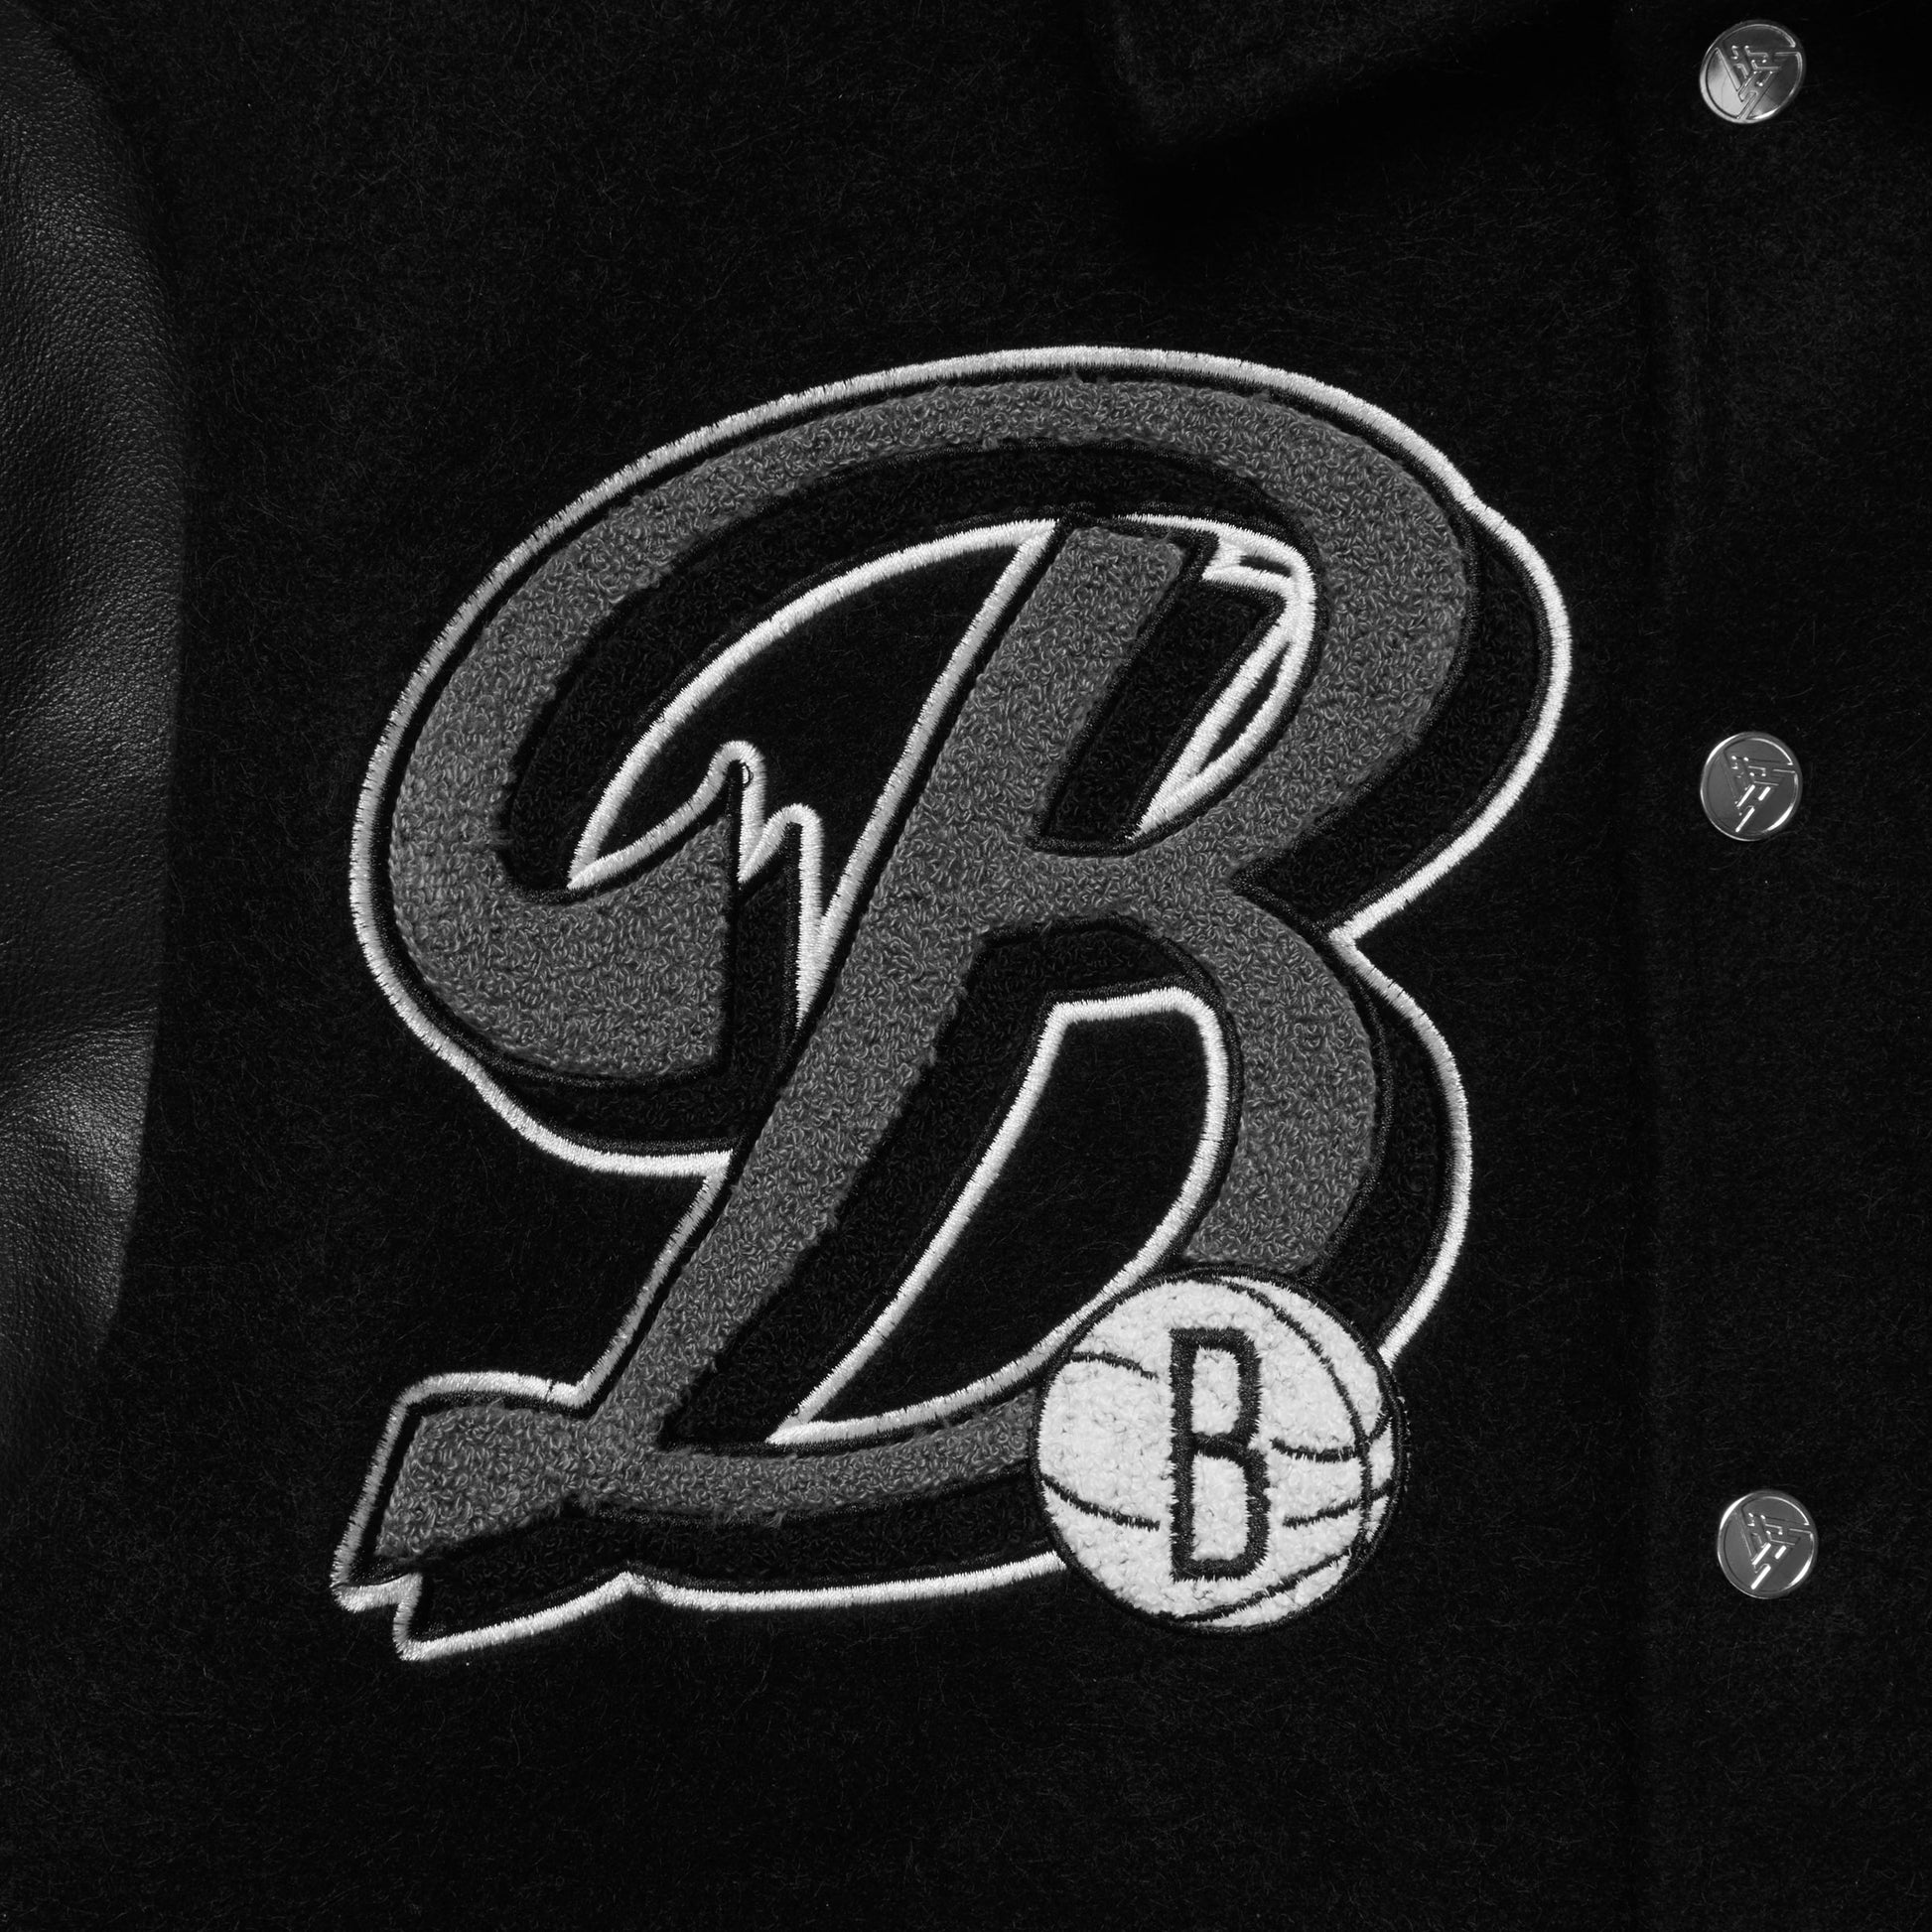 Brooklyn Nets Full Leather Jacket - Black Medium